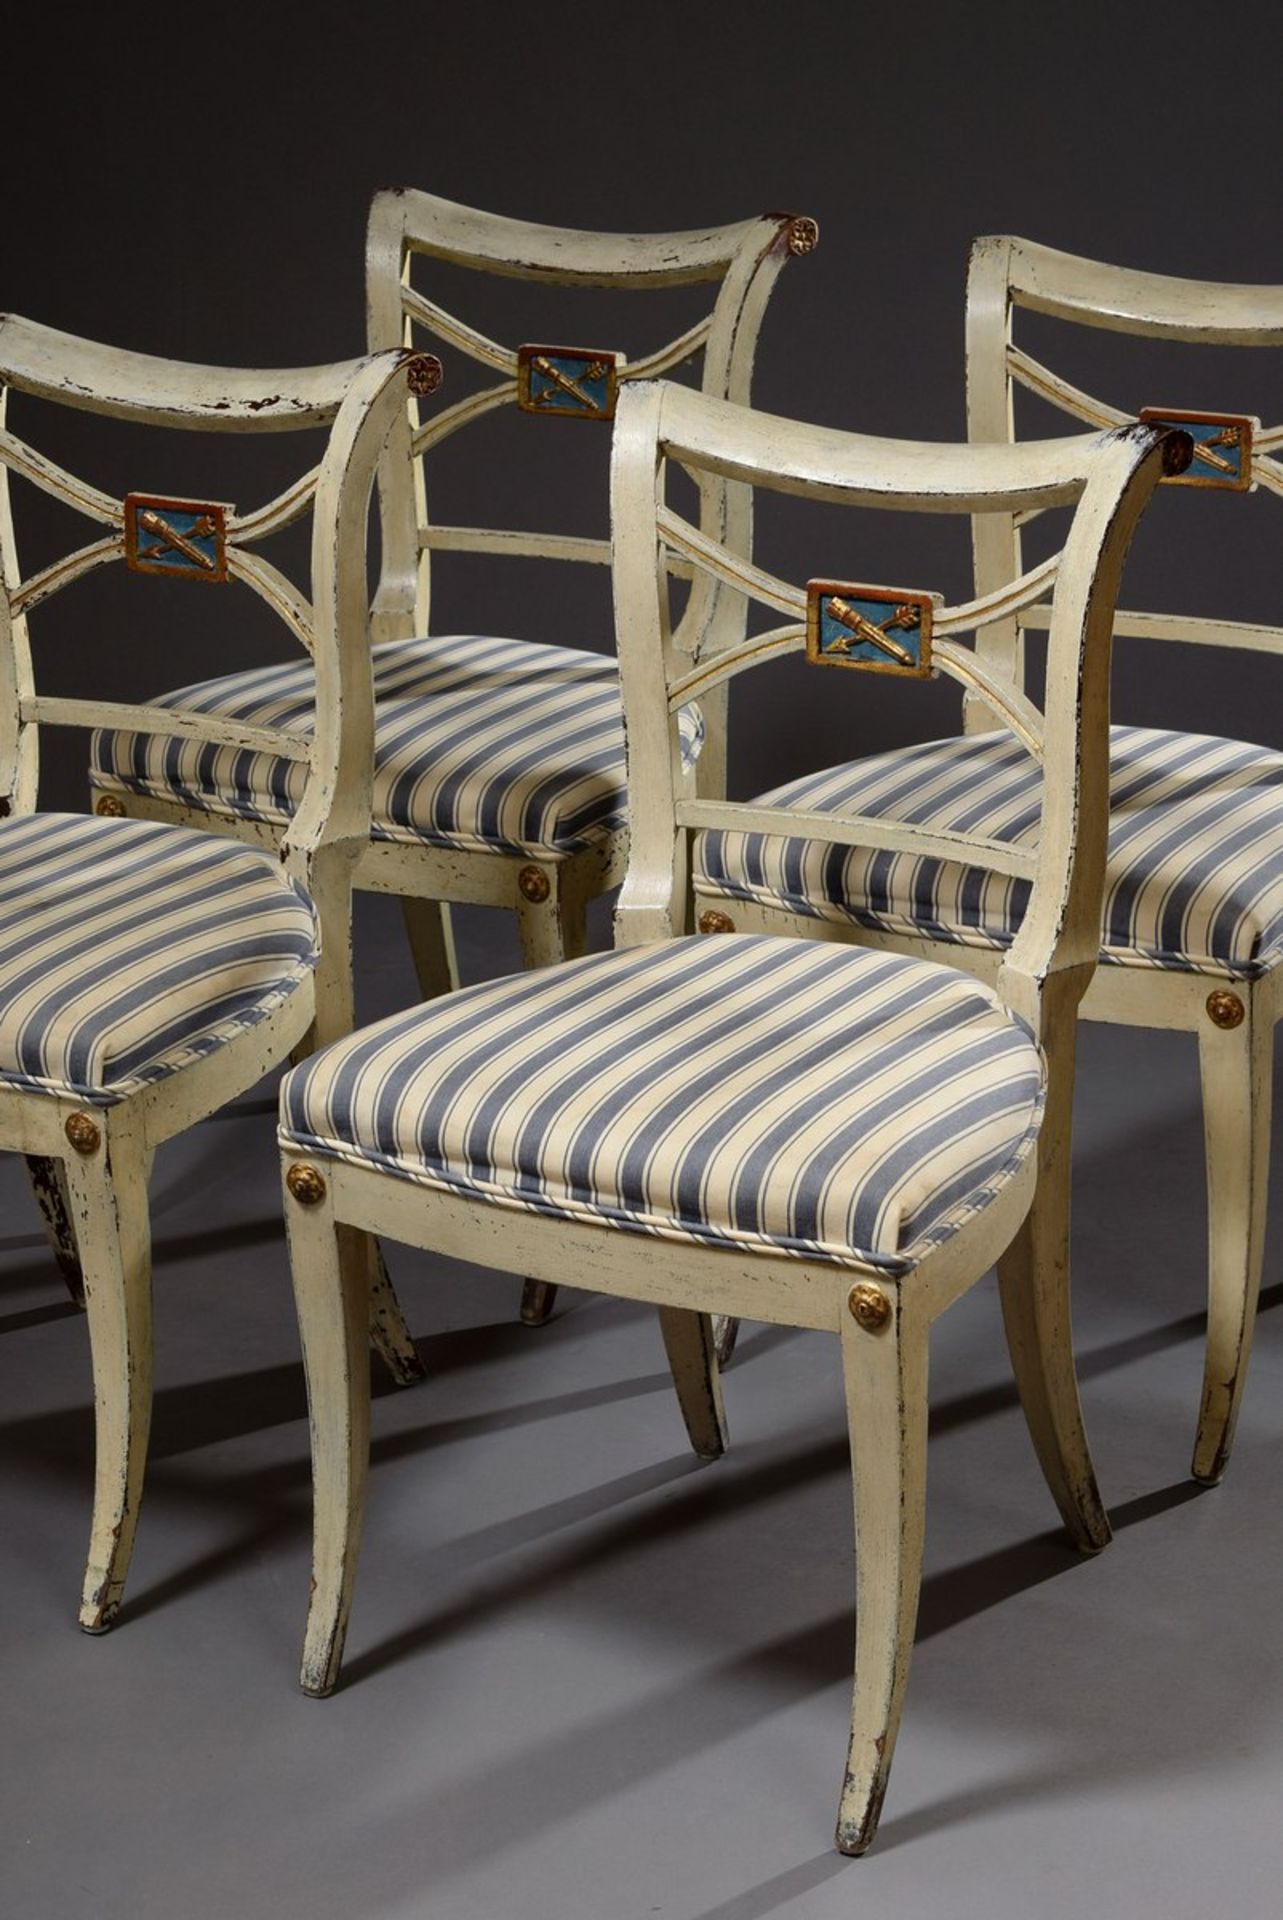 4 Gustavianische Stühle mit Kreuzverstrebung in der Lehne und geschnitztem Pfeilmotiv auf